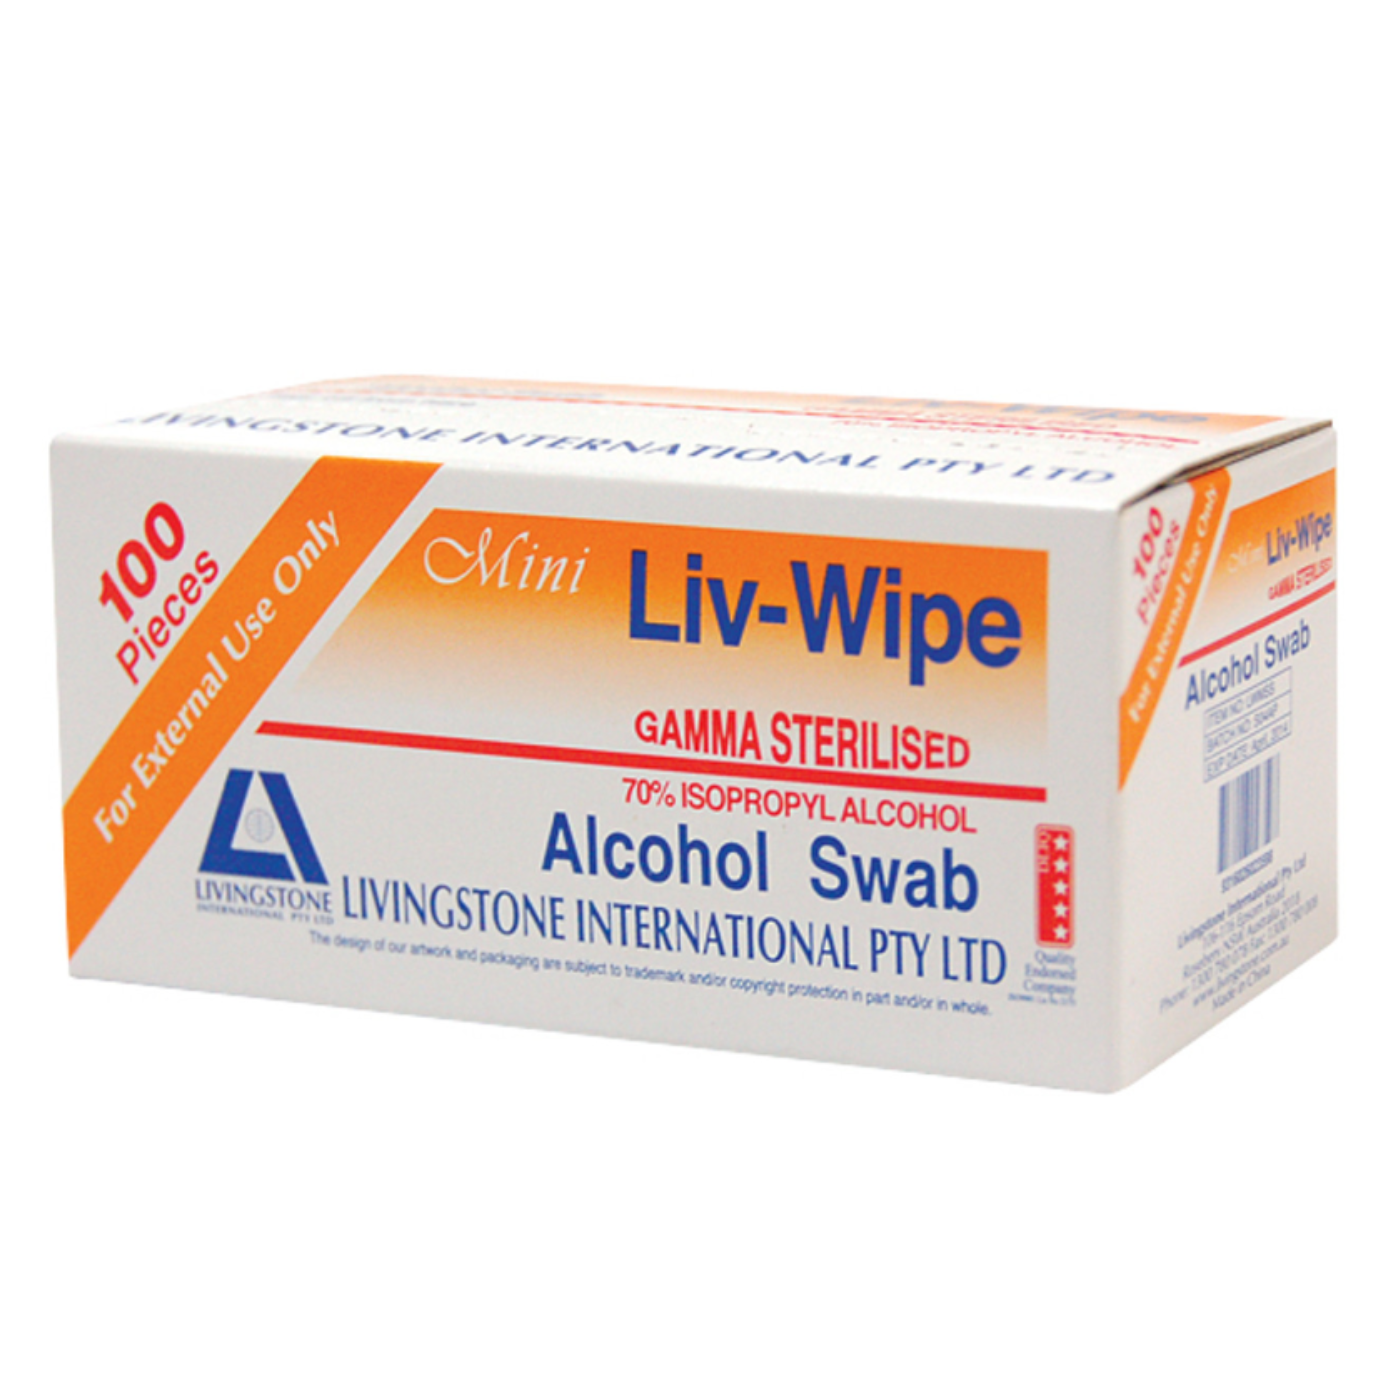 Liv-Wipe Alcohol Swabs - Gamma Sterilised